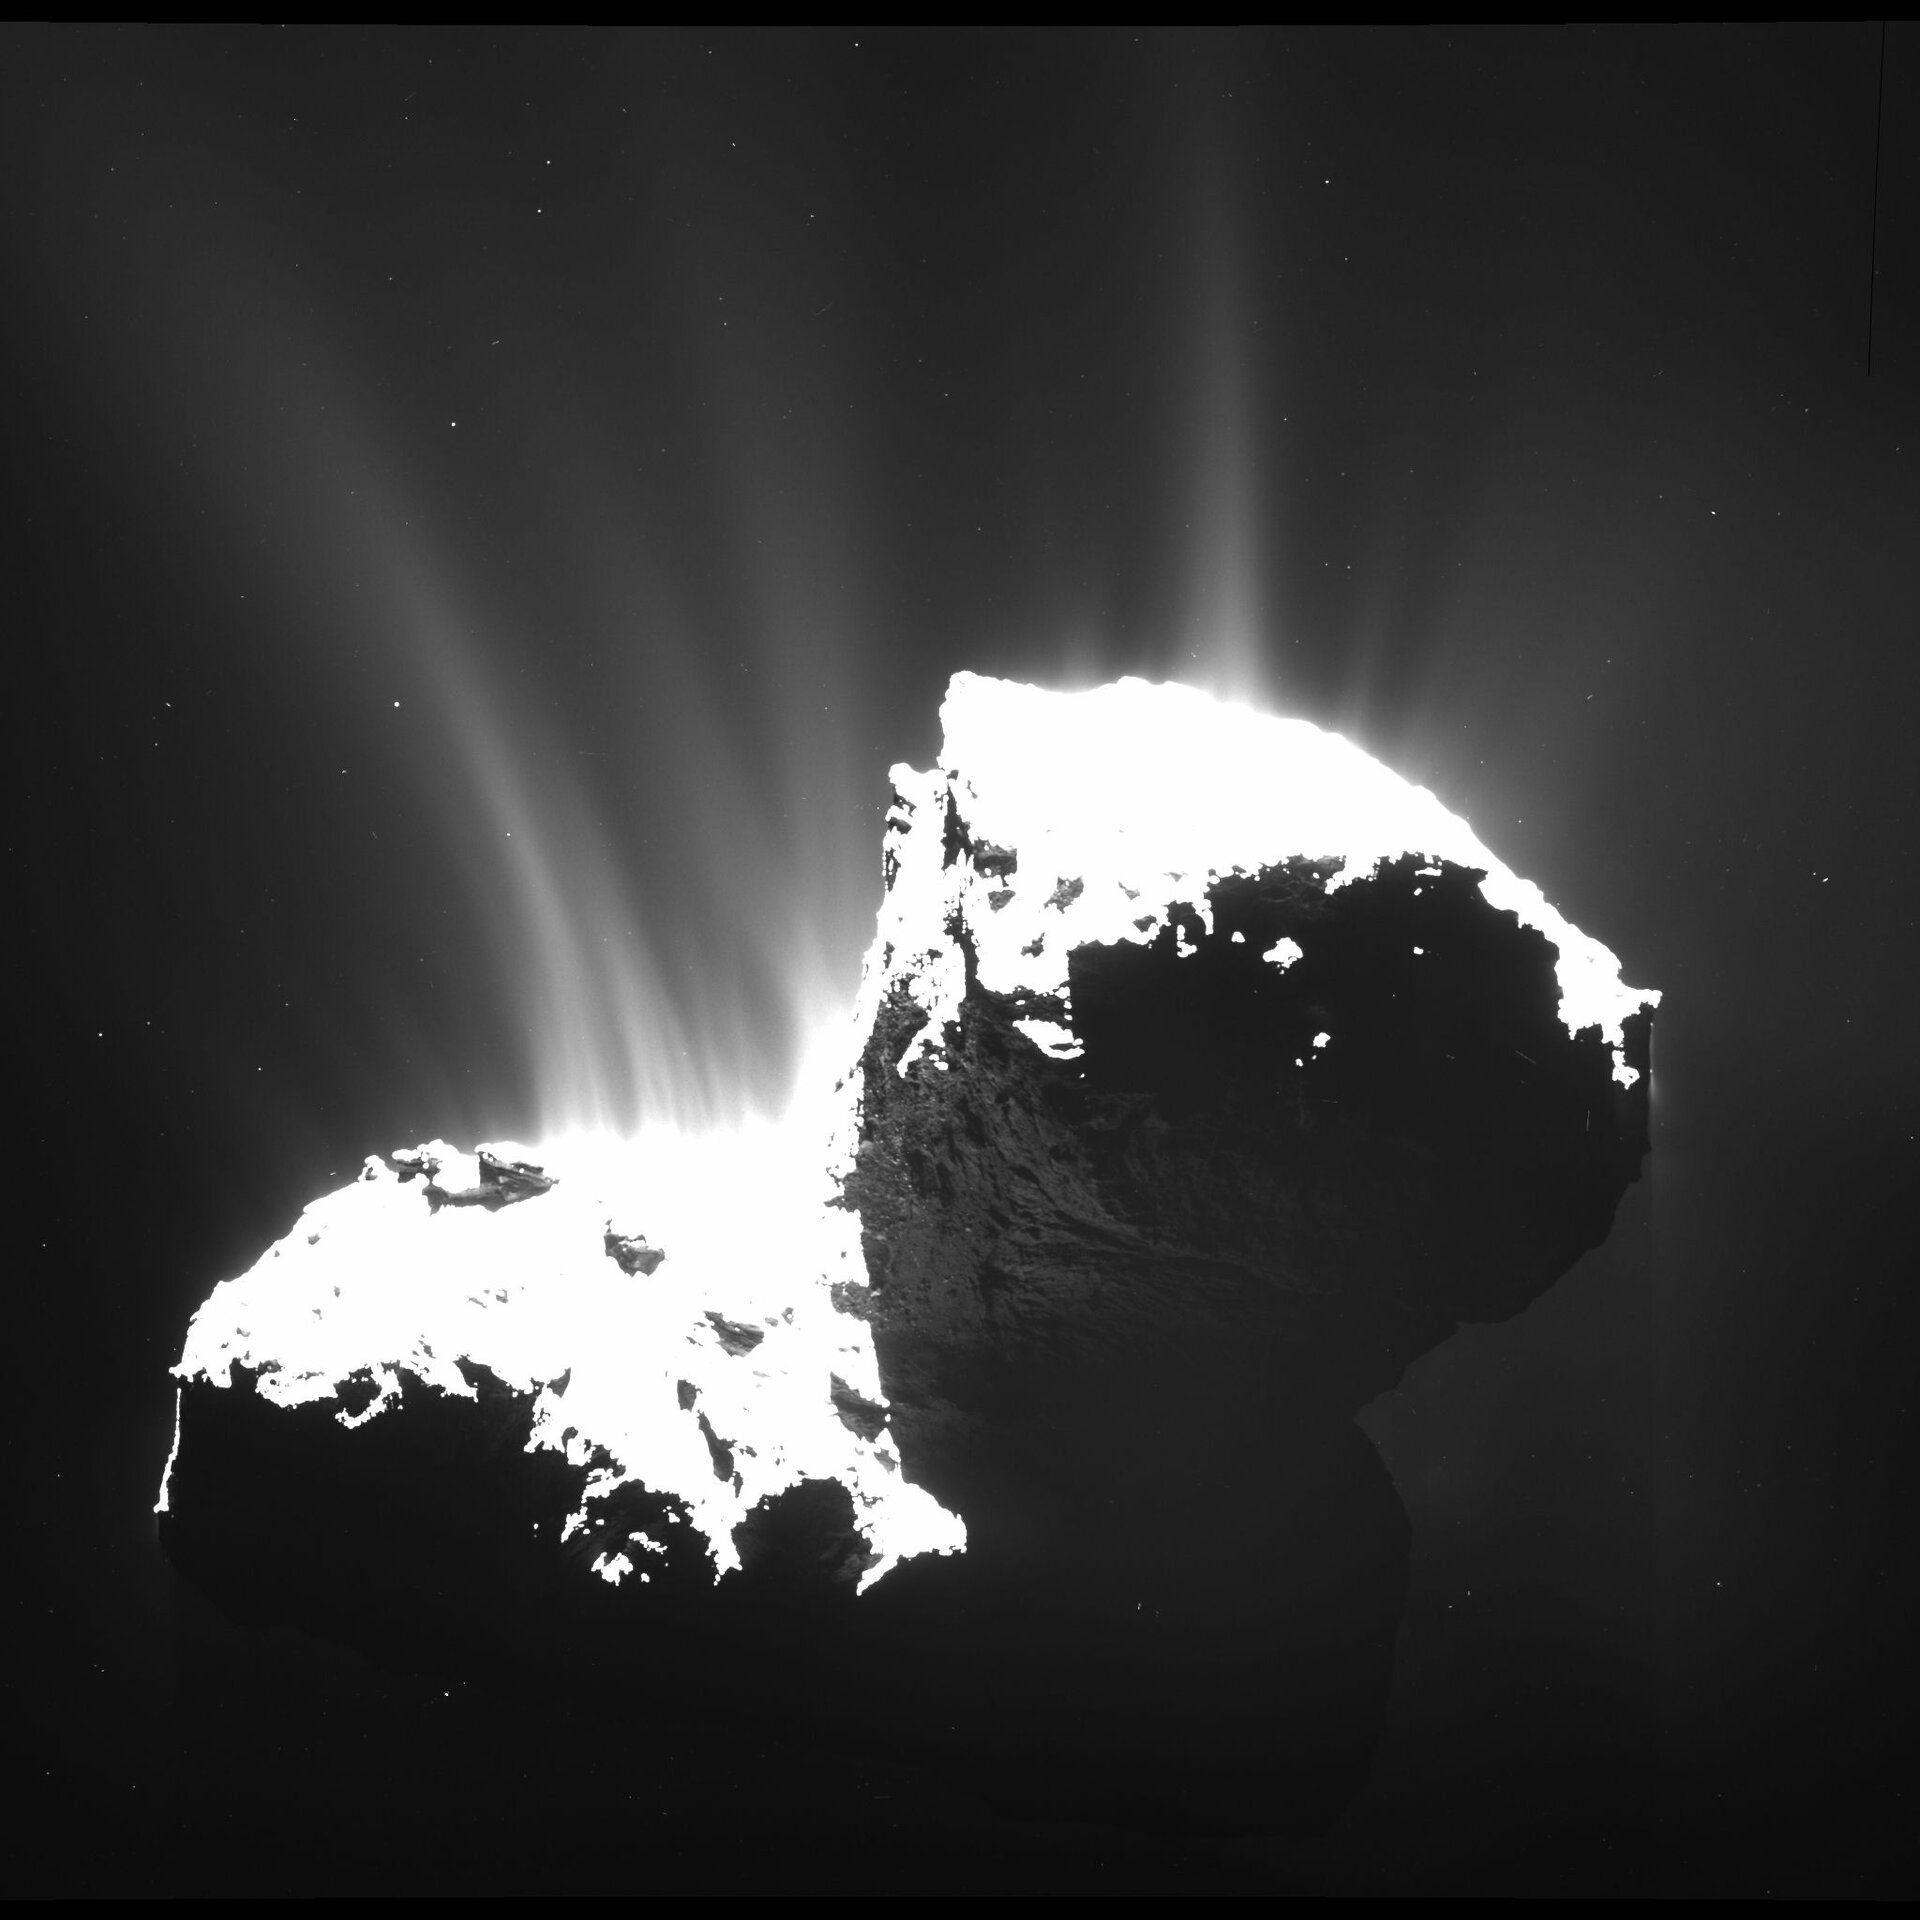 Comet activity – 22 November 2014